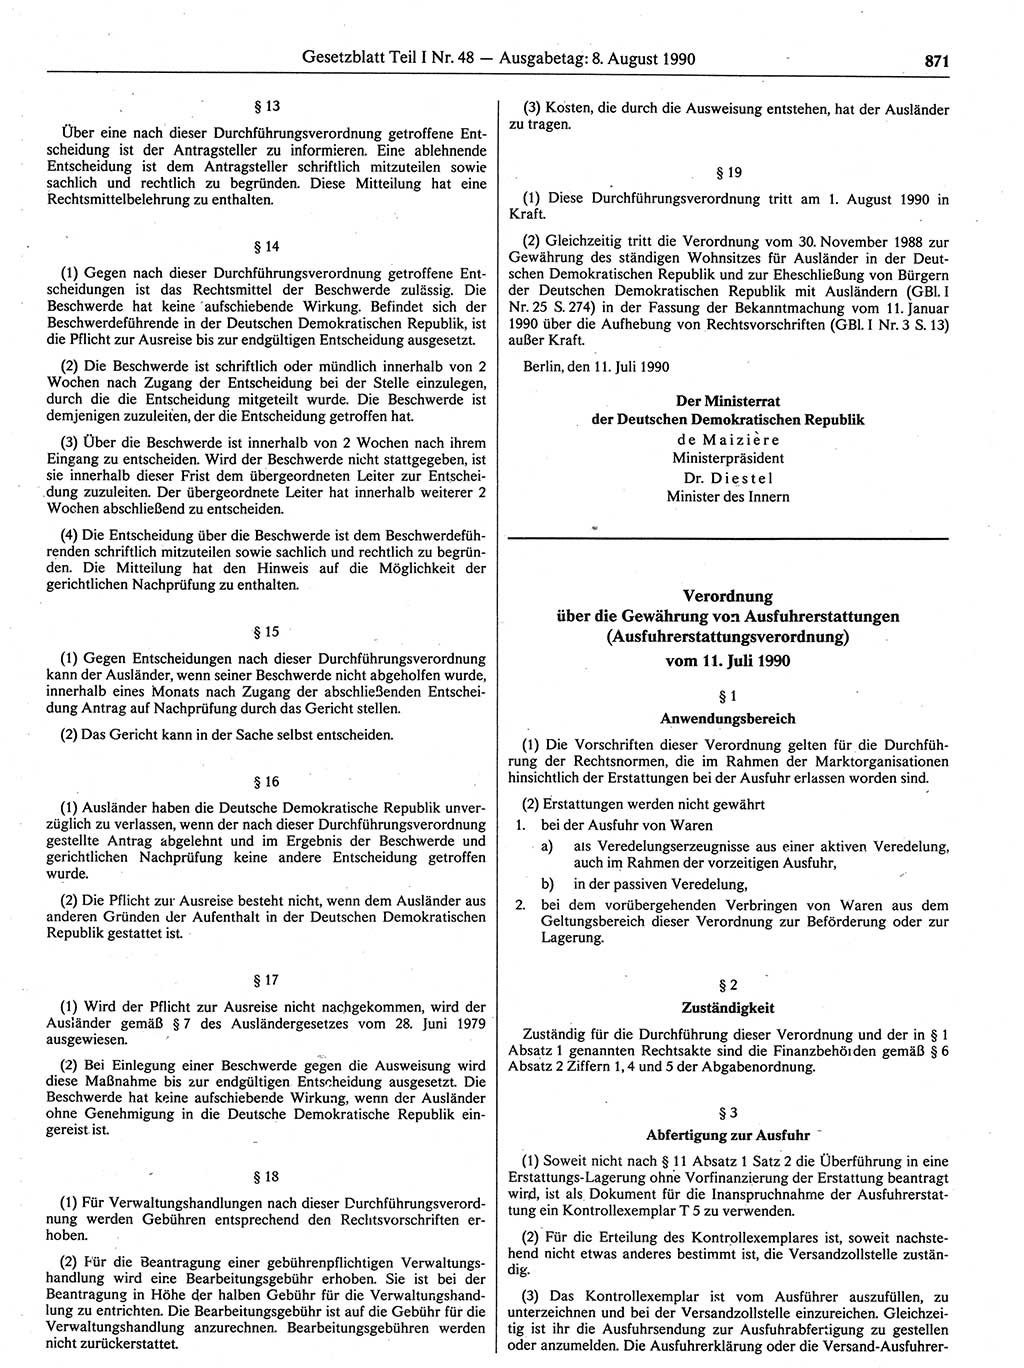 Gesetzblatt (GBl.) der Deutschen Demokratischen Republik (DDR) Teil Ⅰ 1990, Seite 871 (GBl. DDR Ⅰ 1990, S. 871)